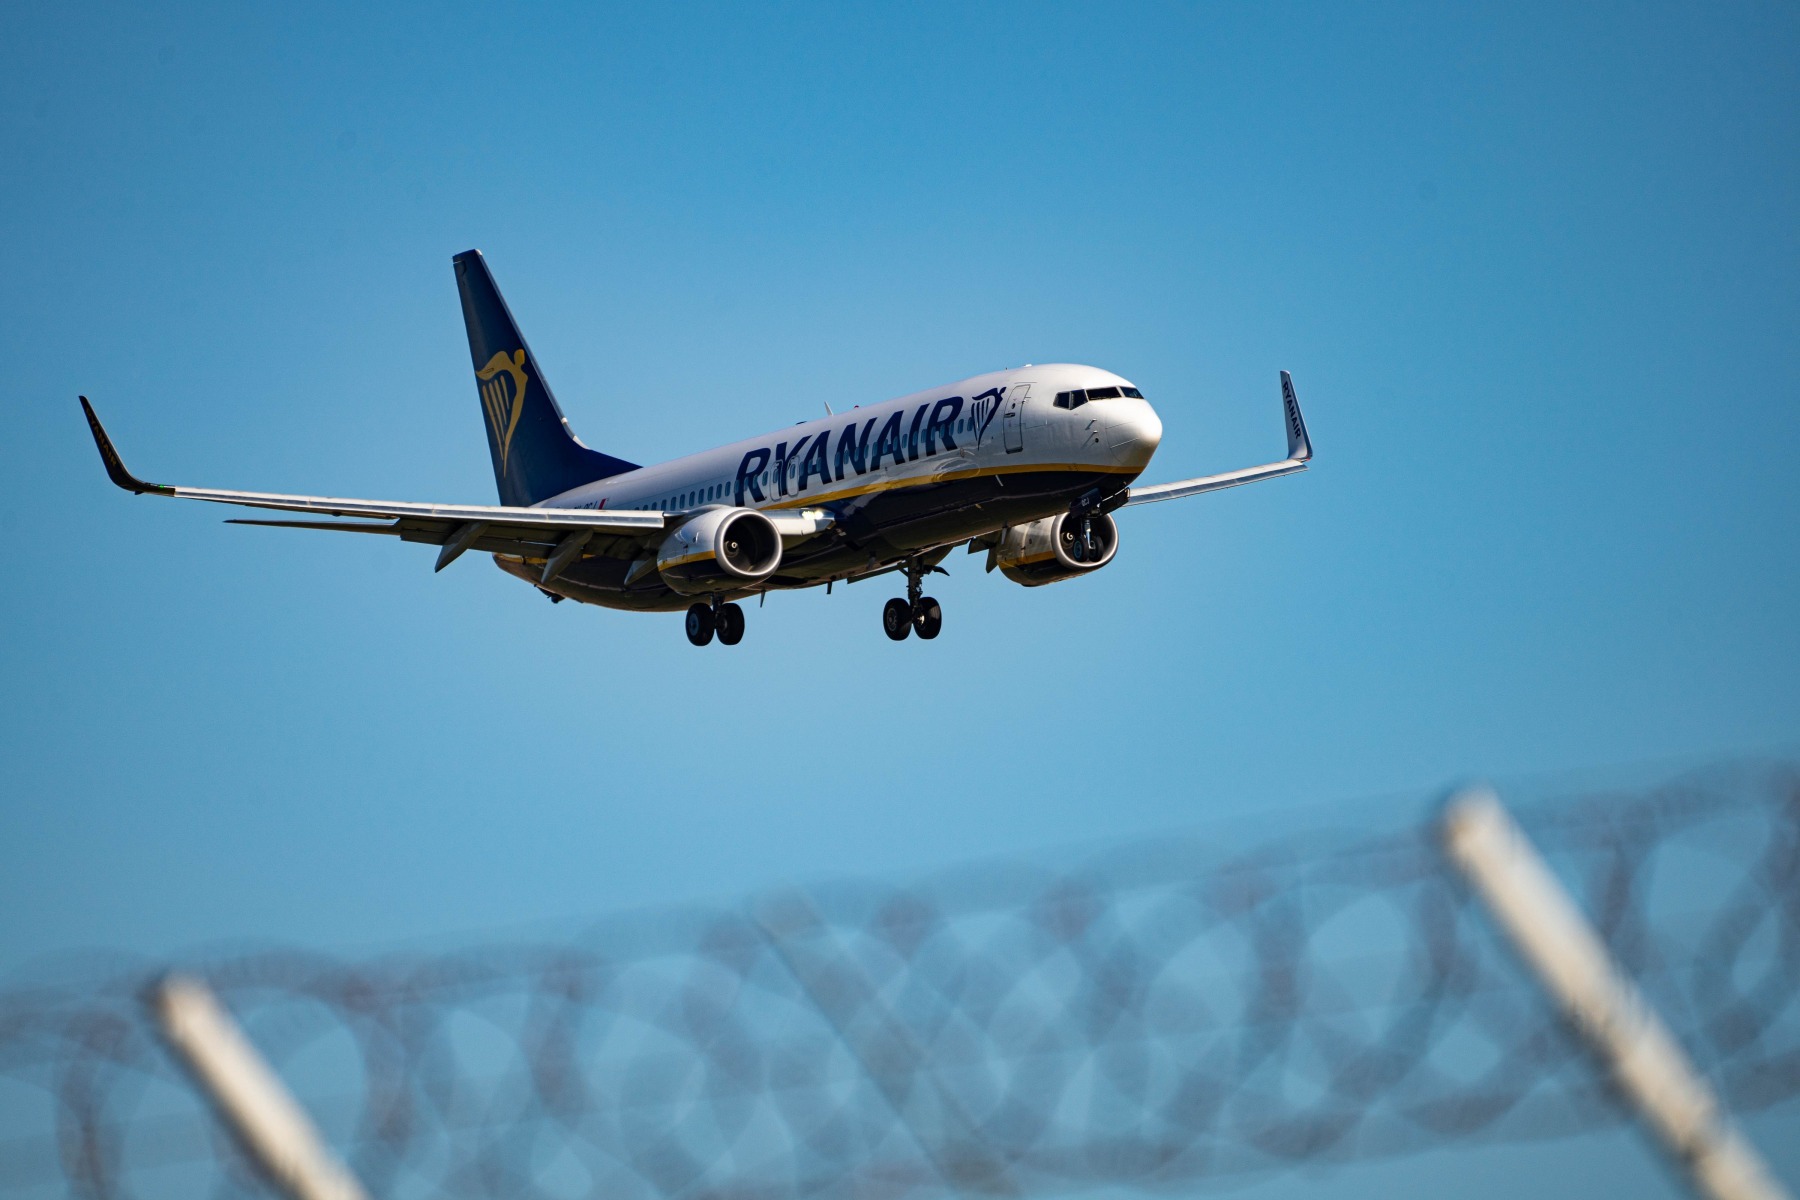 Sciopero nel settore aeronautico in Italia e Francia / Decine di voli cancellati / Colpiti anche i voli che servono gli aeroporti della Romania